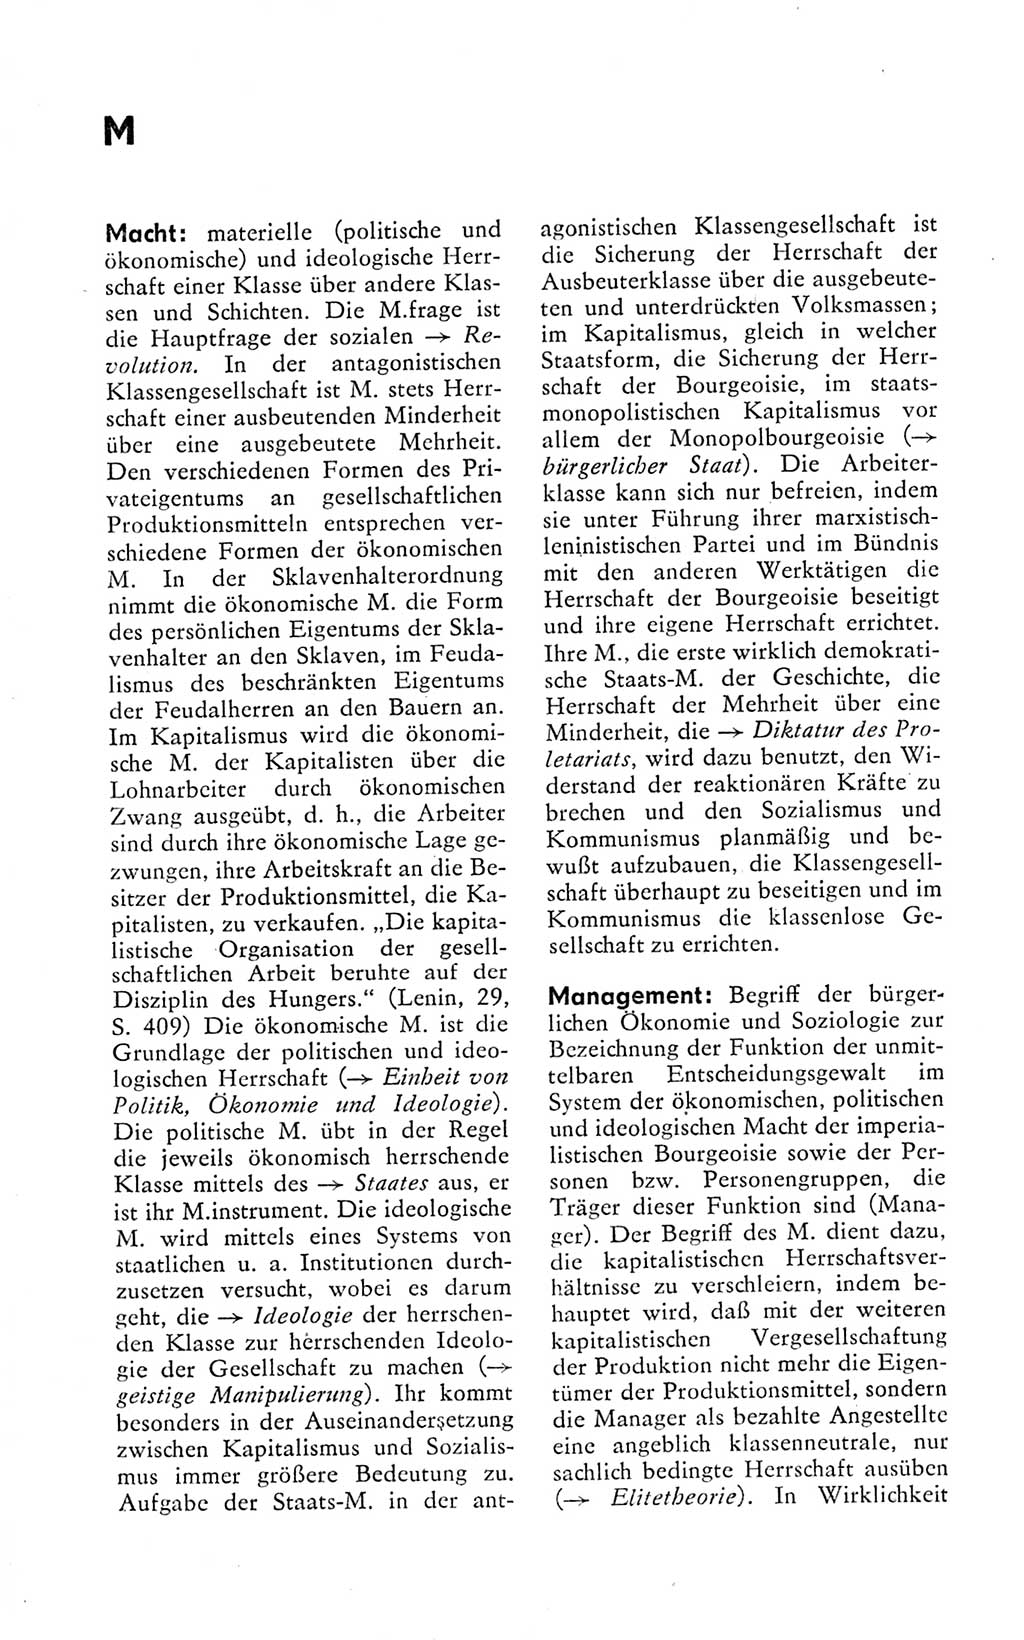 Kleines politisches Wörterbuch [Deutsche Demokratische Republik (DDR)] 1978, Seite 542 (Kl. pol. Wb. DDR 1978, S. 542)